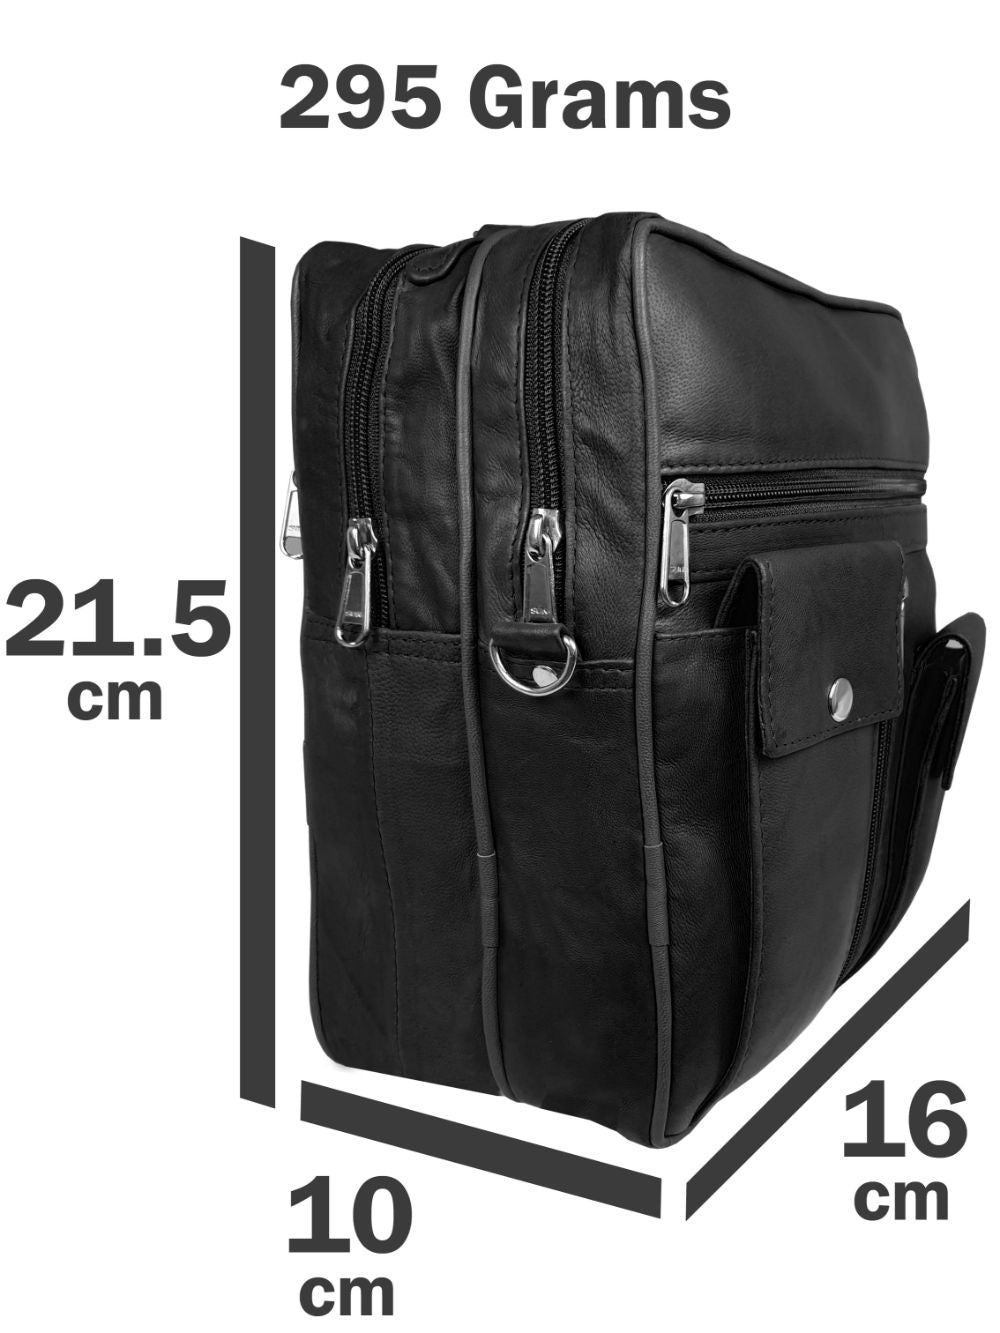 Roamlite Mens Travel Bag Black Leather RL504 small